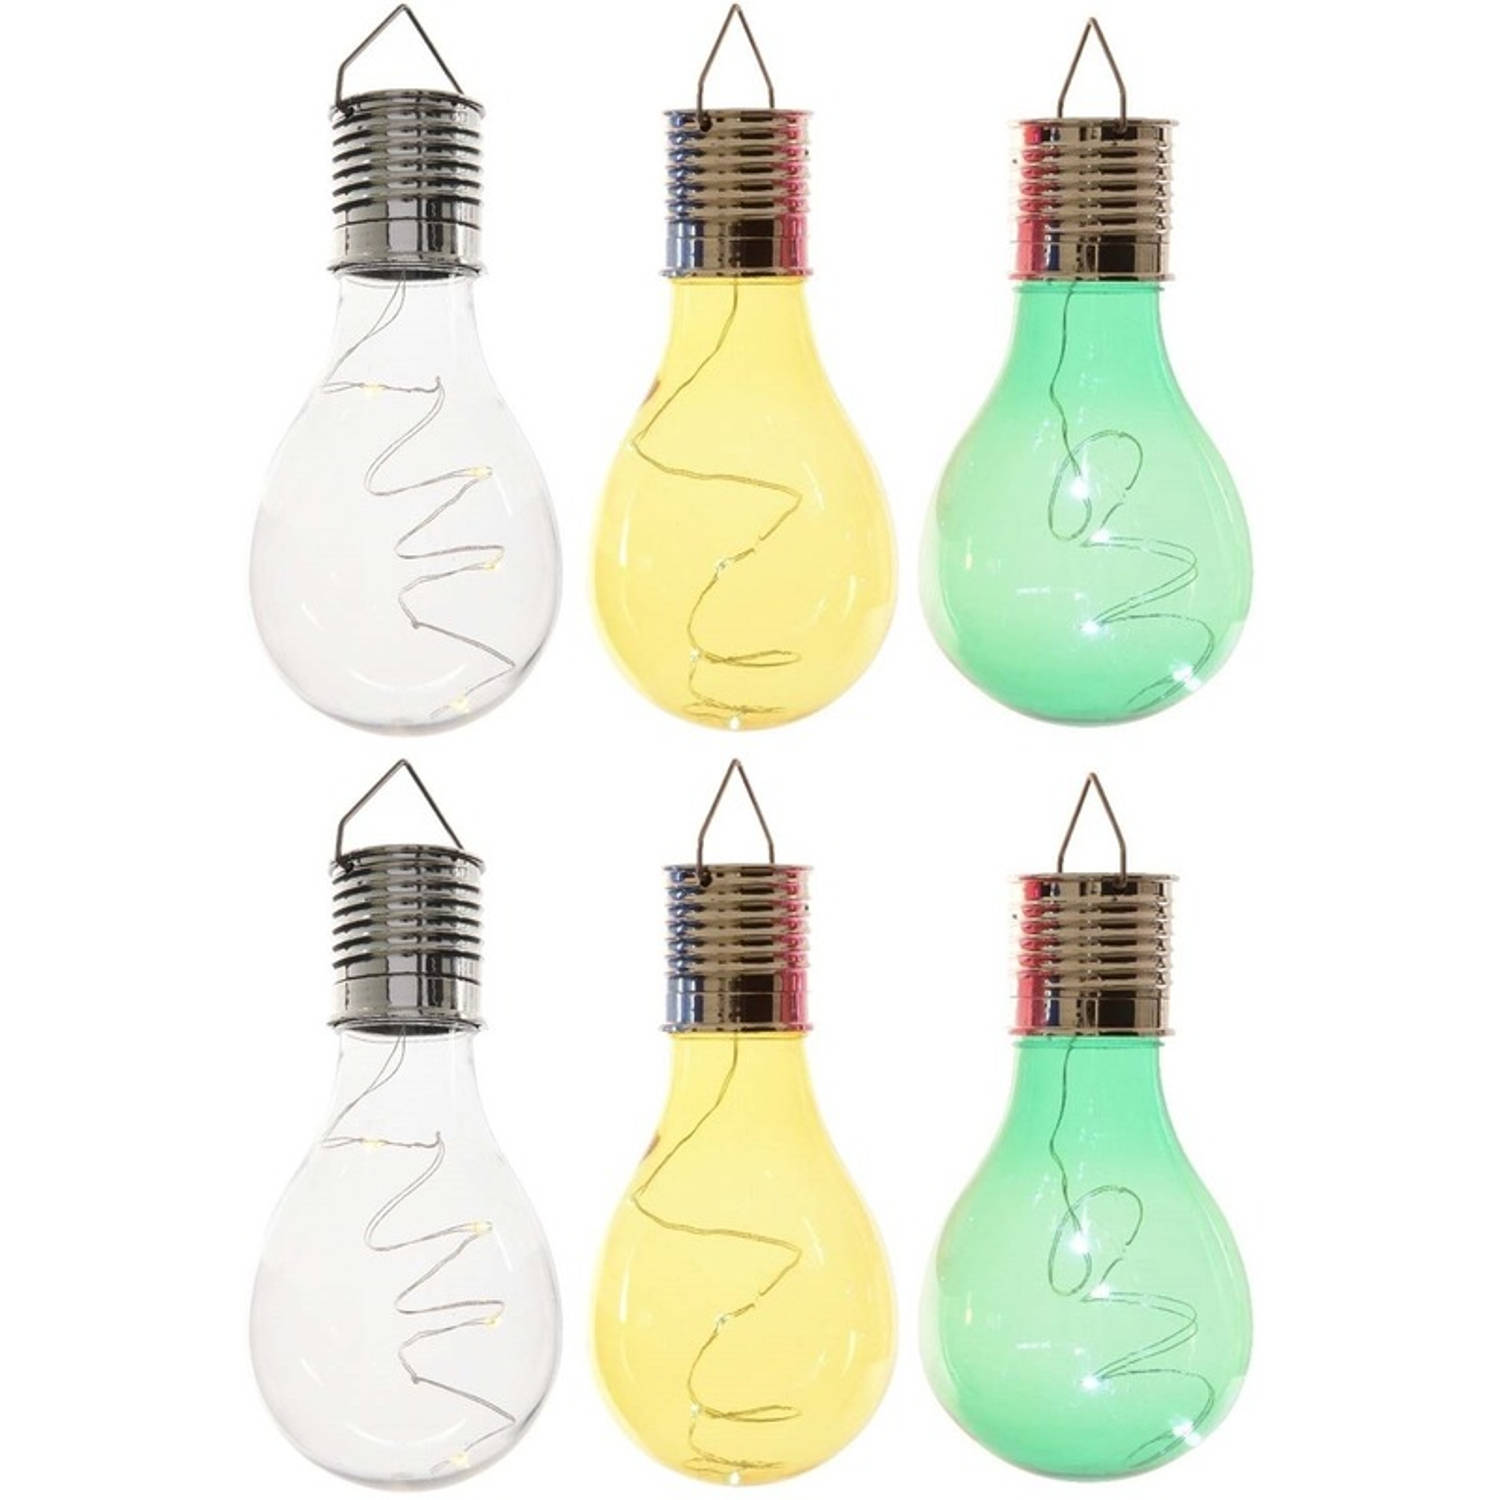 6x Buitenlampen-tuinlampen Lampbolletjes-peertjes 14 Cm Transparant-groen-geel Buitenverlichting